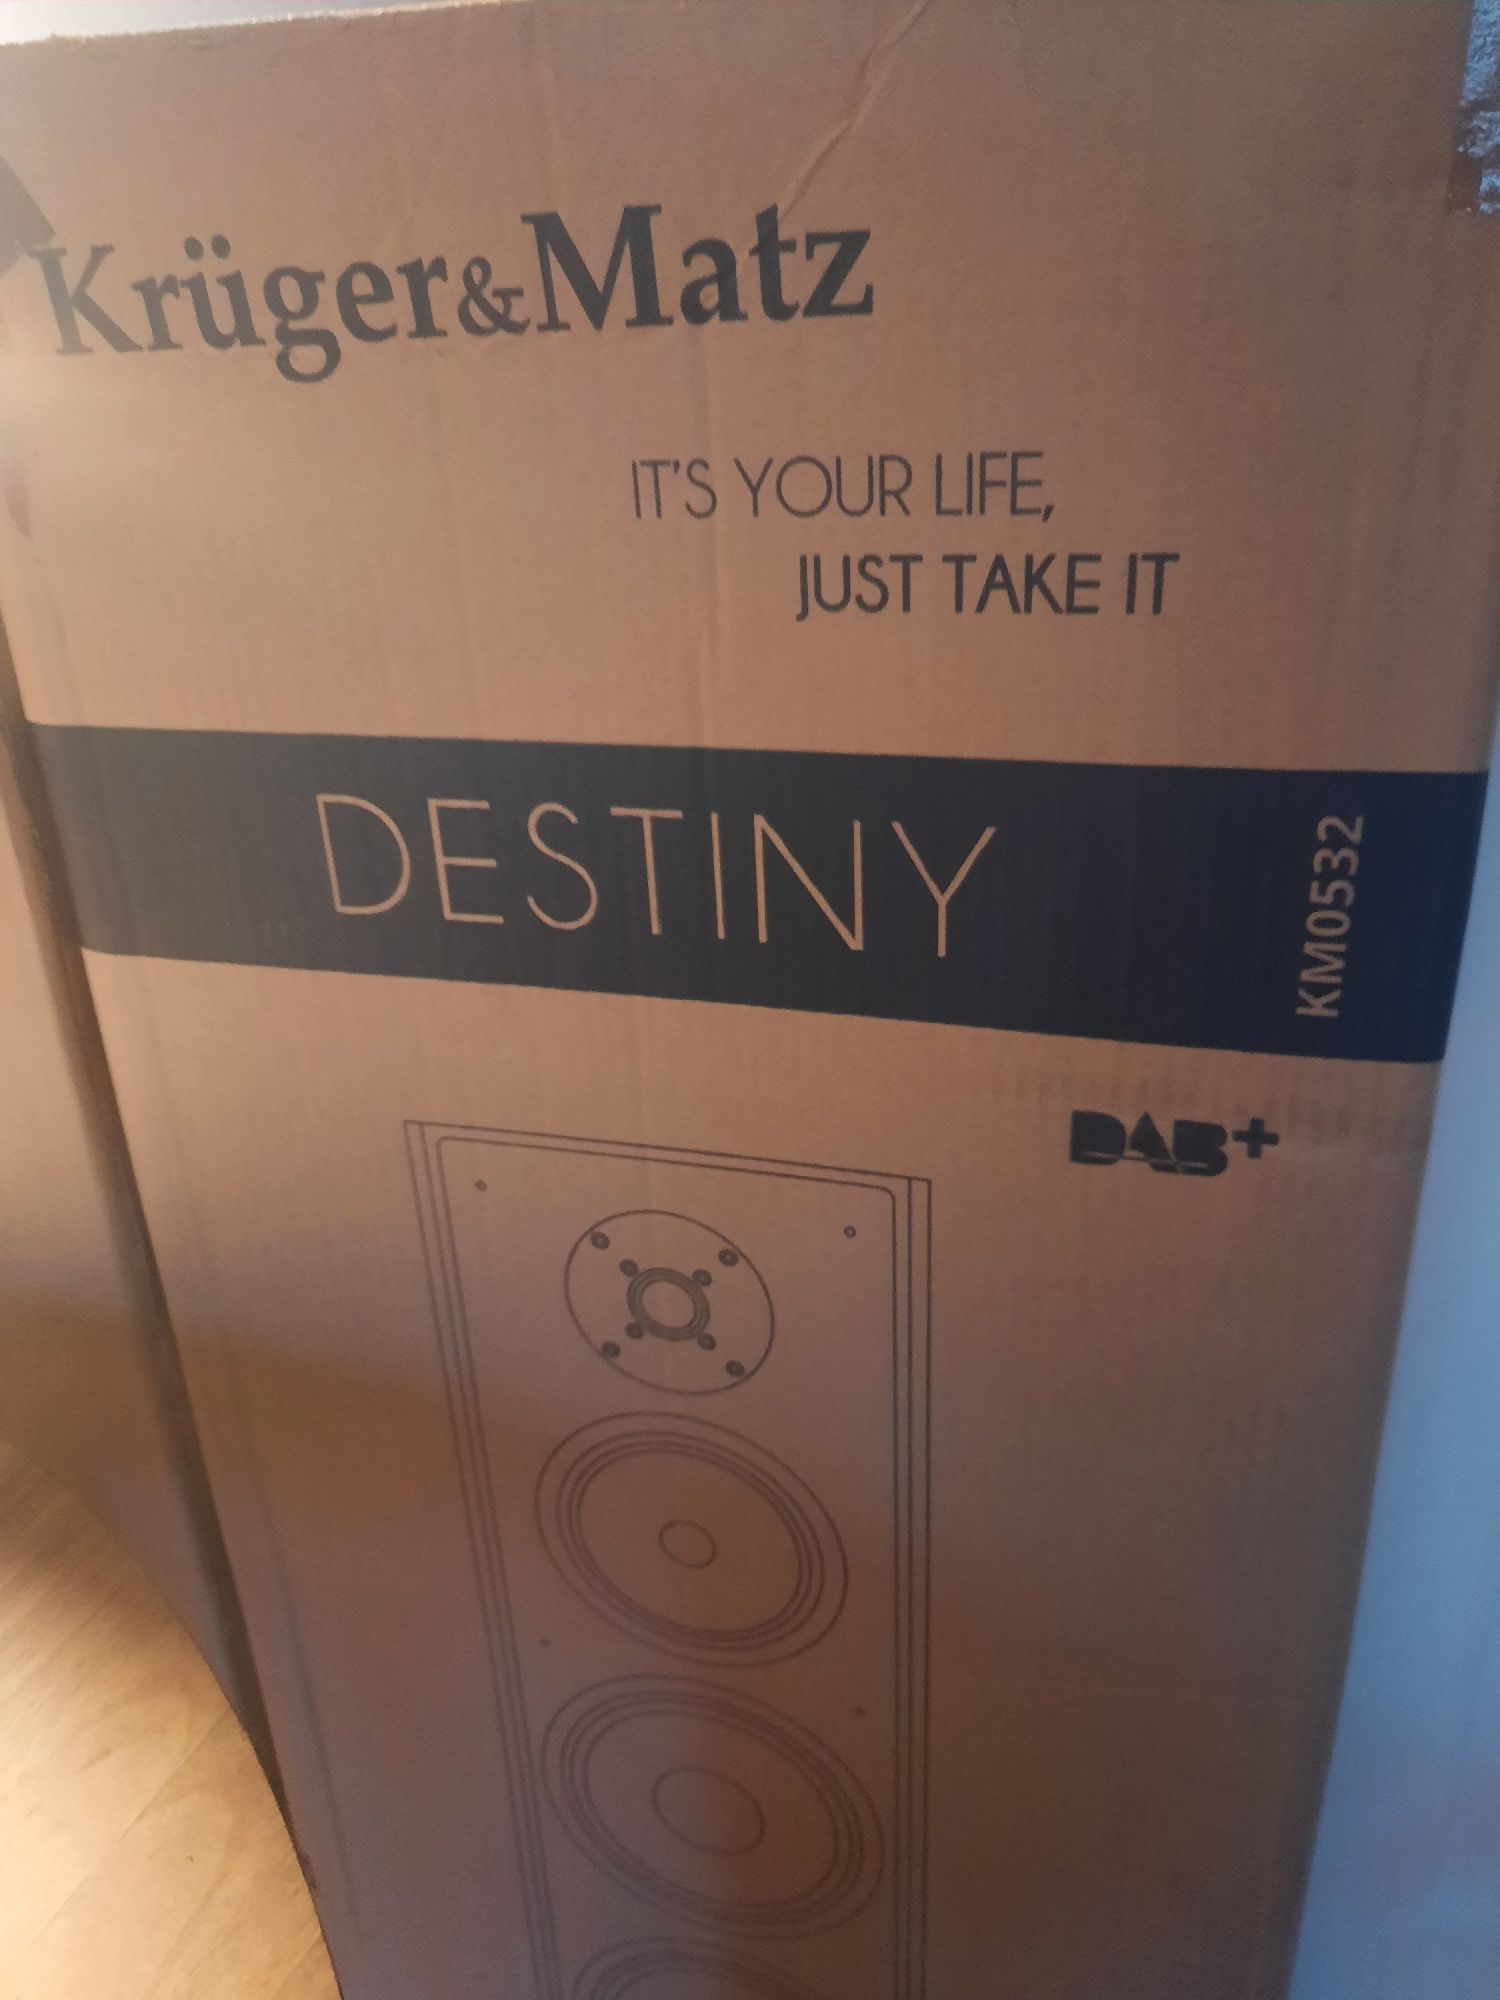 Kruger&Matz Destiny 2.0 KM0532 kolumny aktywne